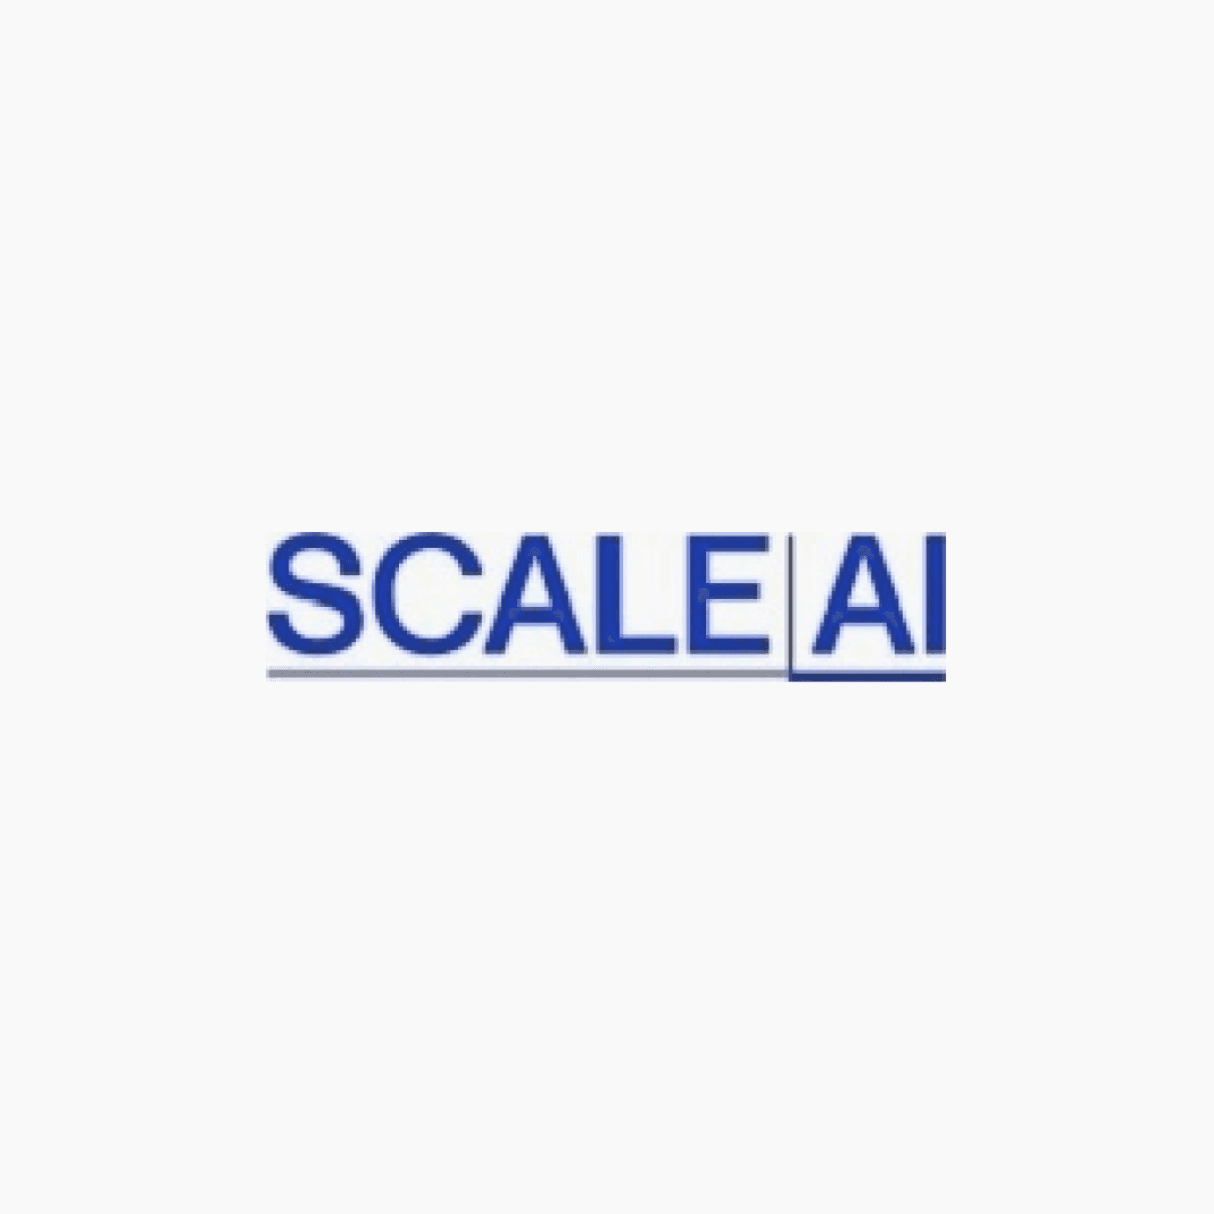 ScaleAI